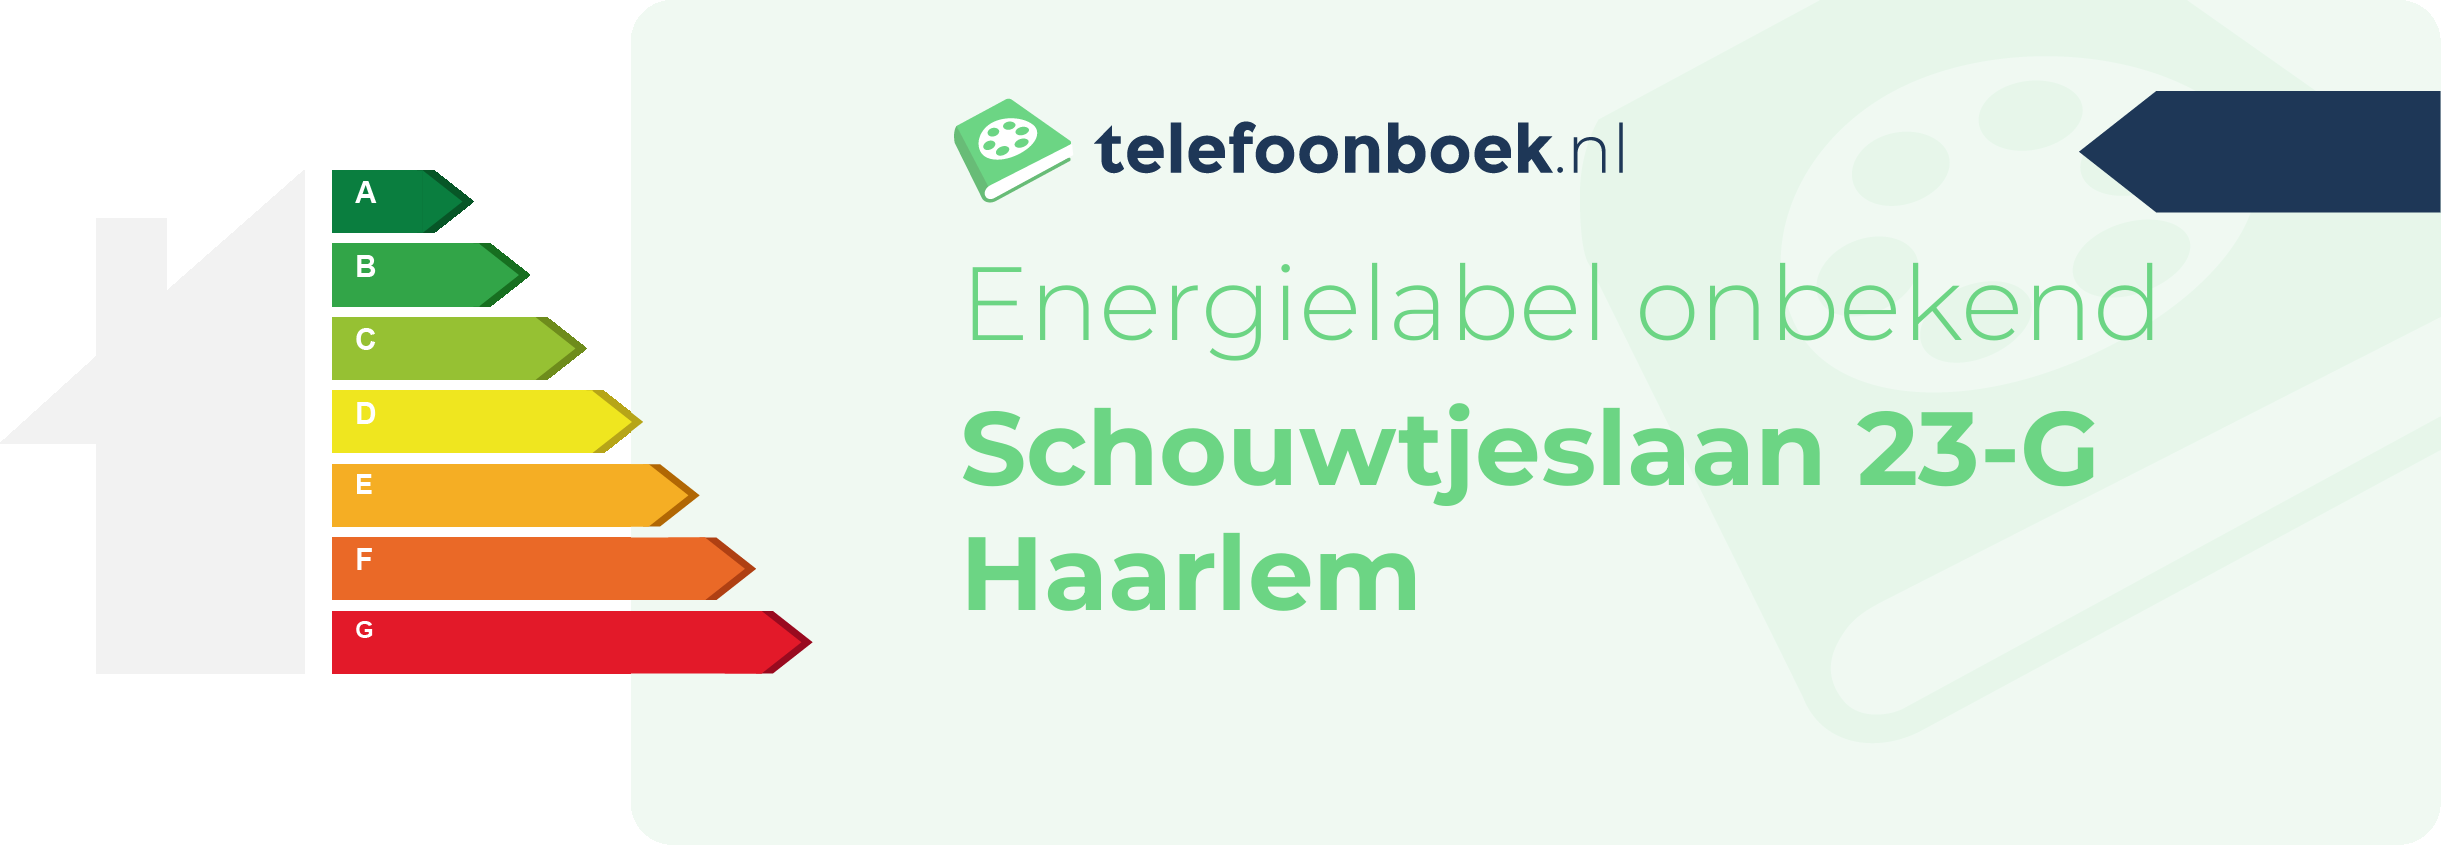 Energielabel Schouwtjeslaan 23-G Haarlem